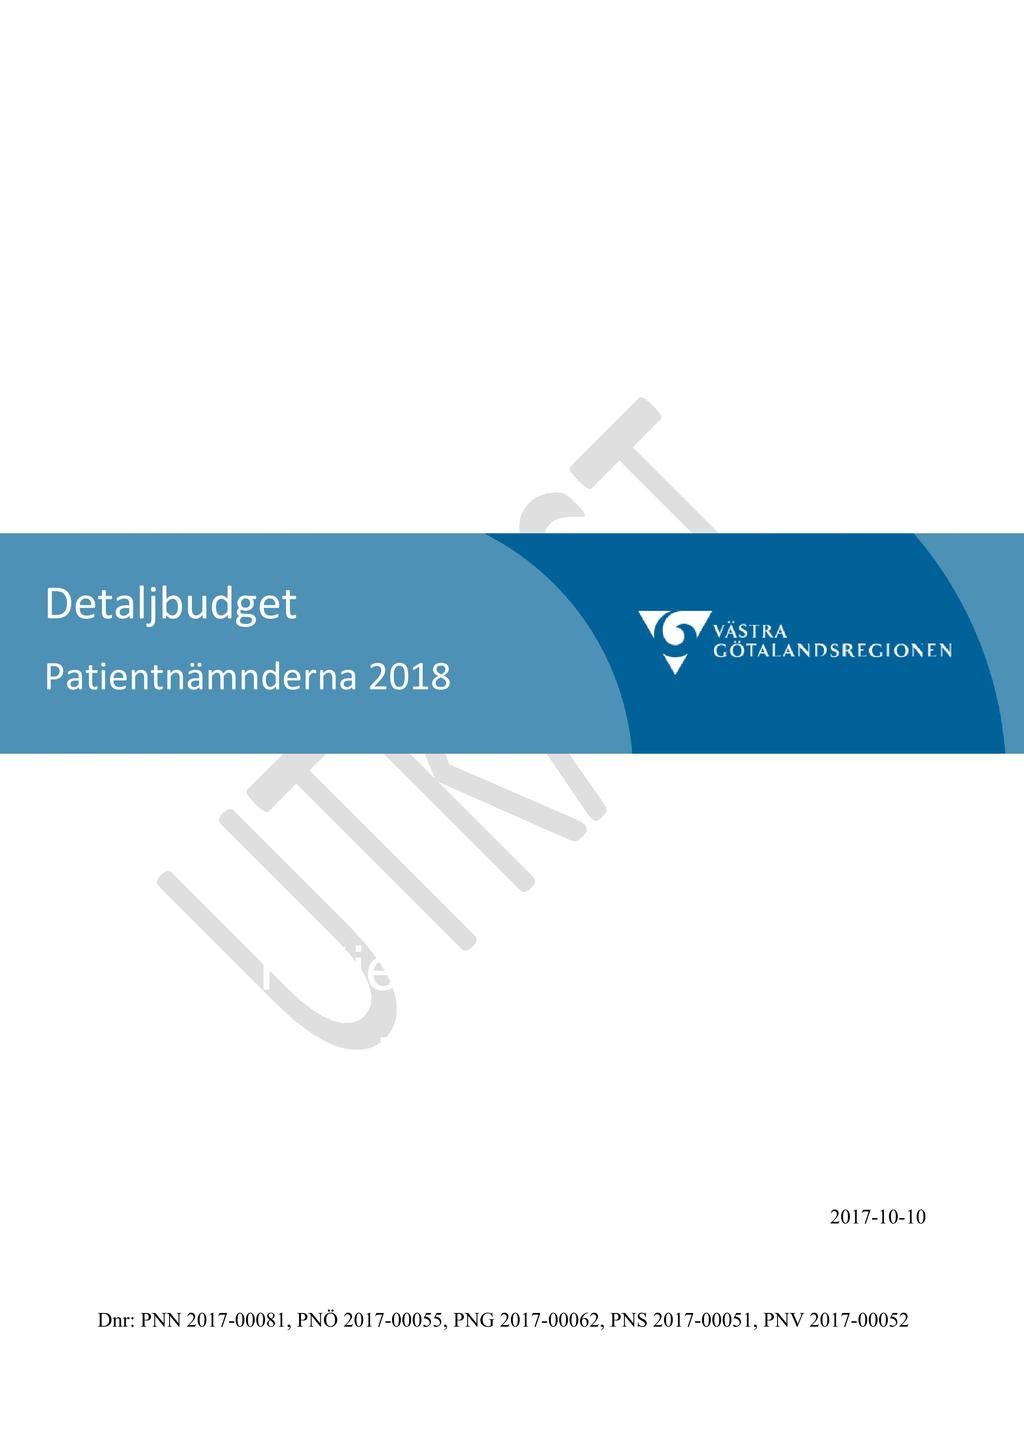 56 Detaljbudget 2018 - PNG 2017-00062-1 Detaljbudget 2018 : Detaljbudget (Patientnamnderna) utkast Detaljbudget Patientnämnderna